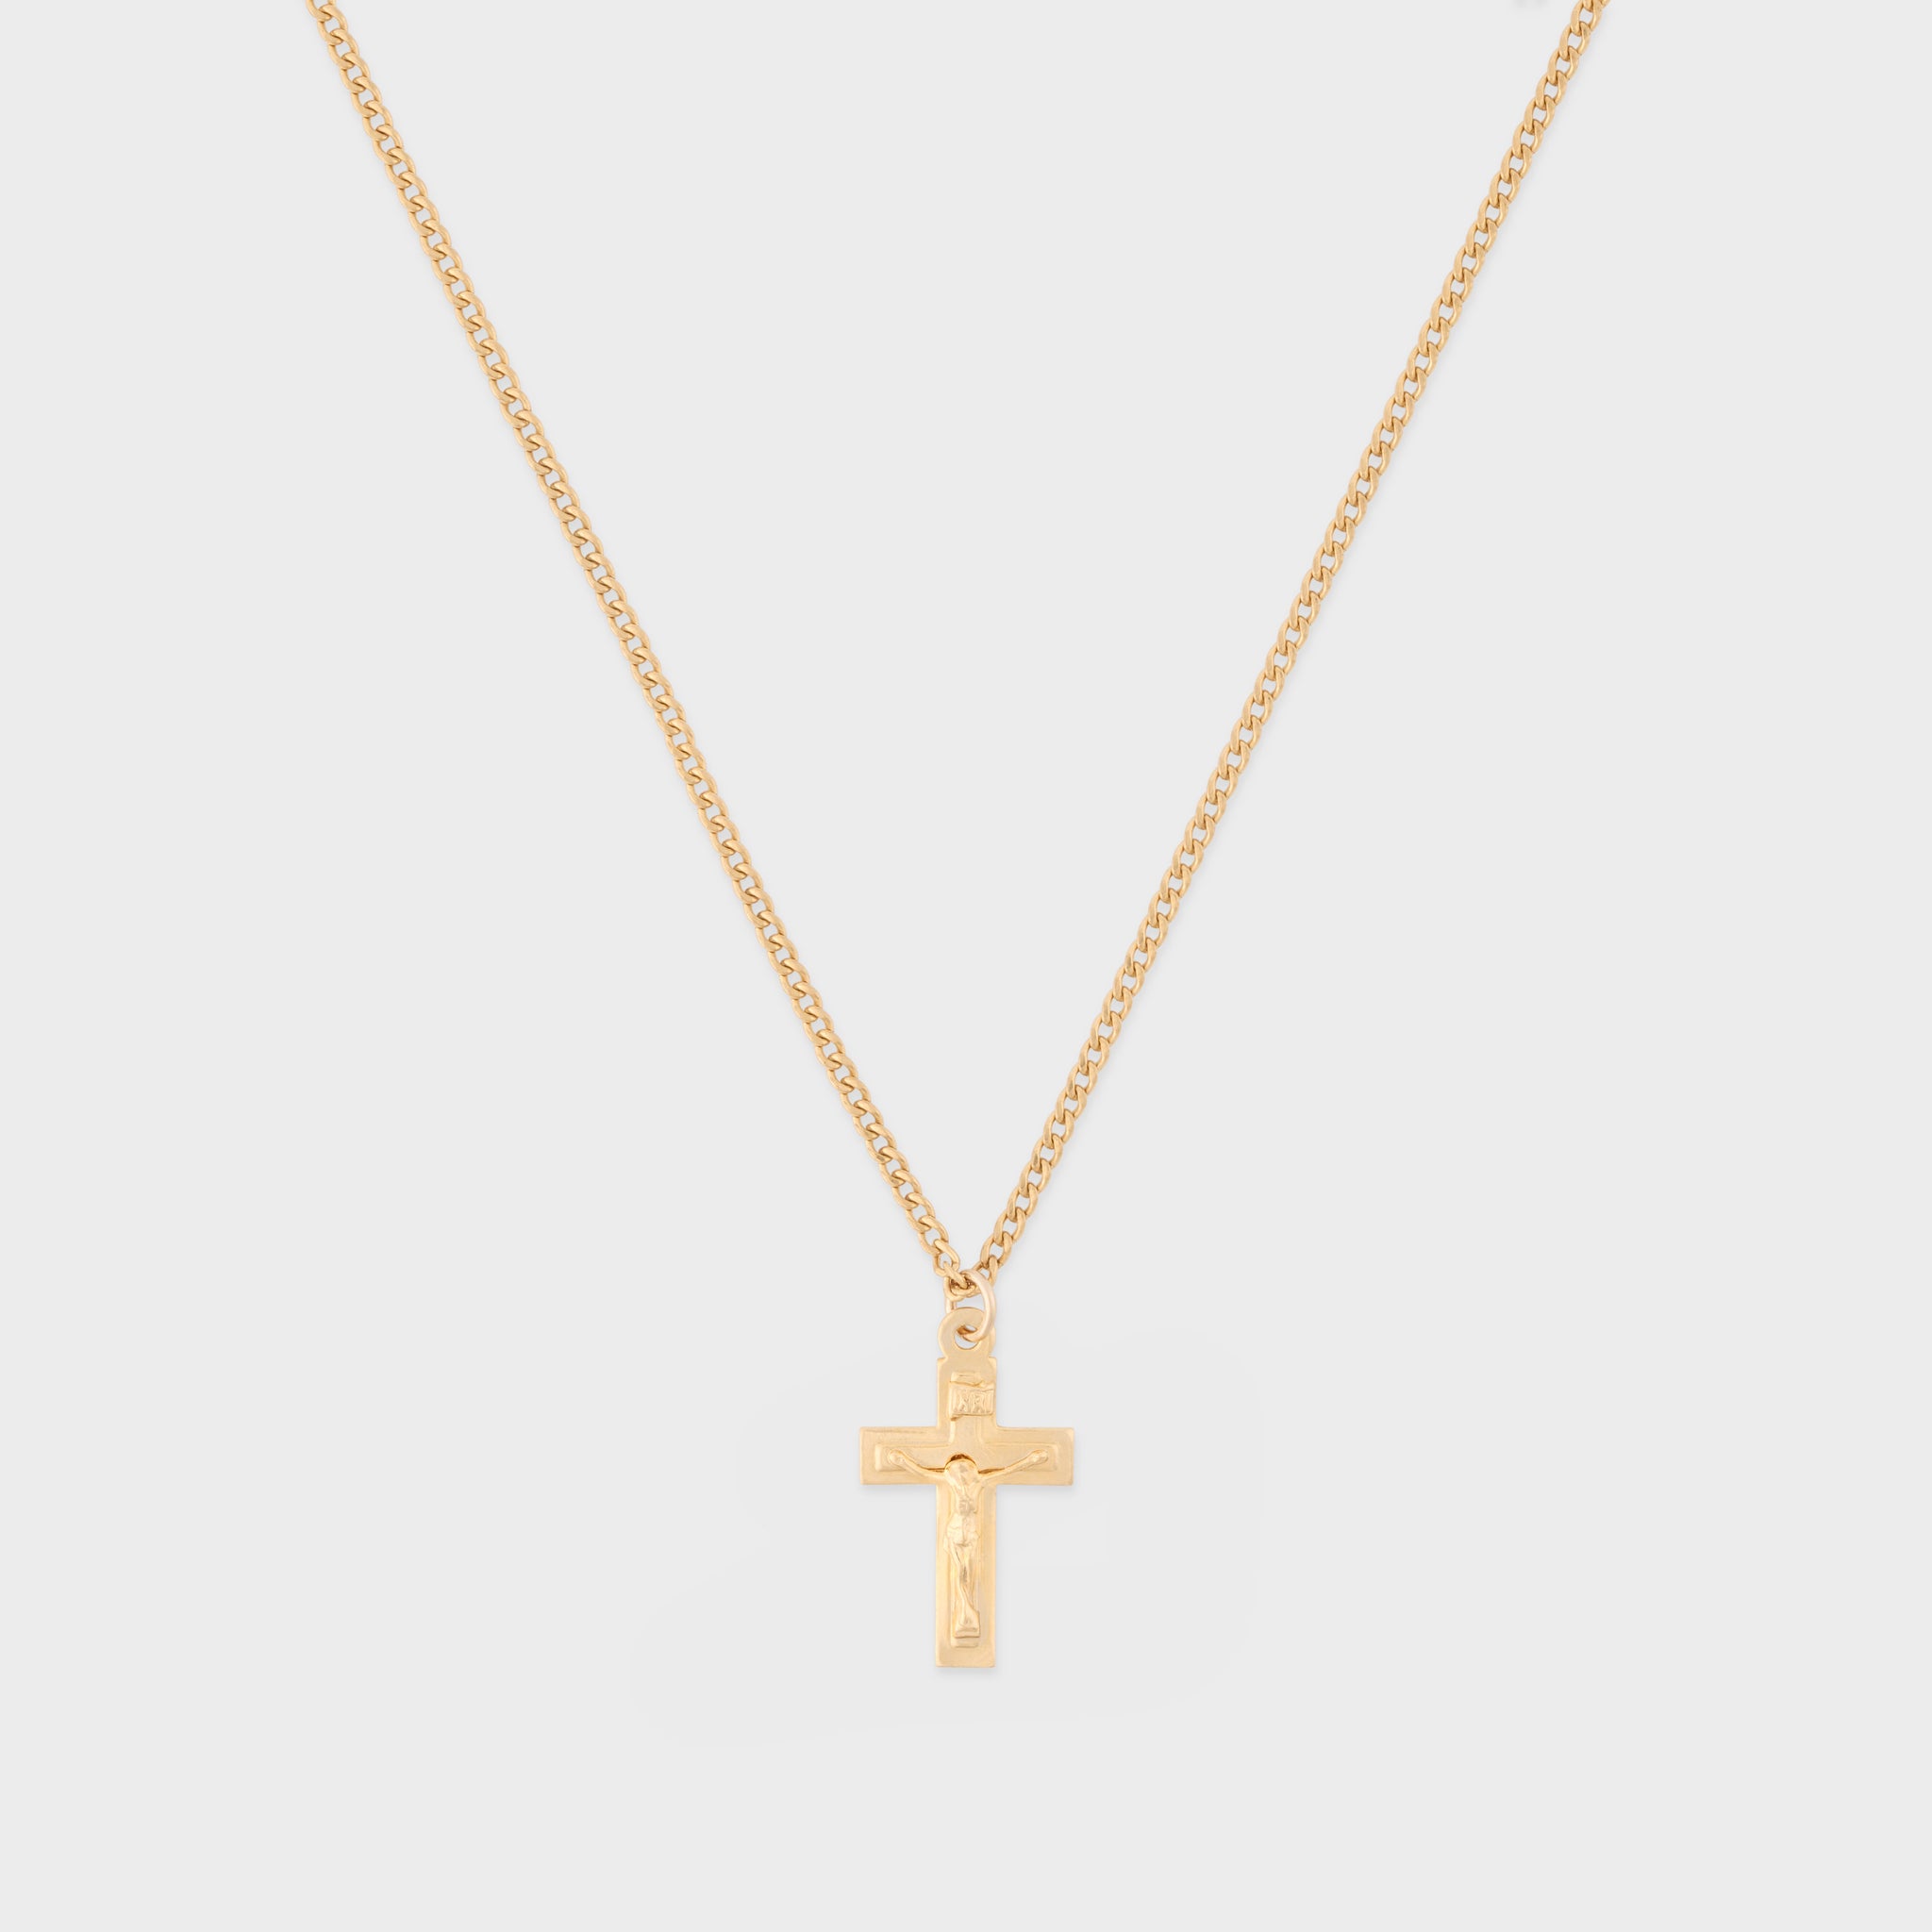 crucifix necklace – Cuffed by Nano LLC